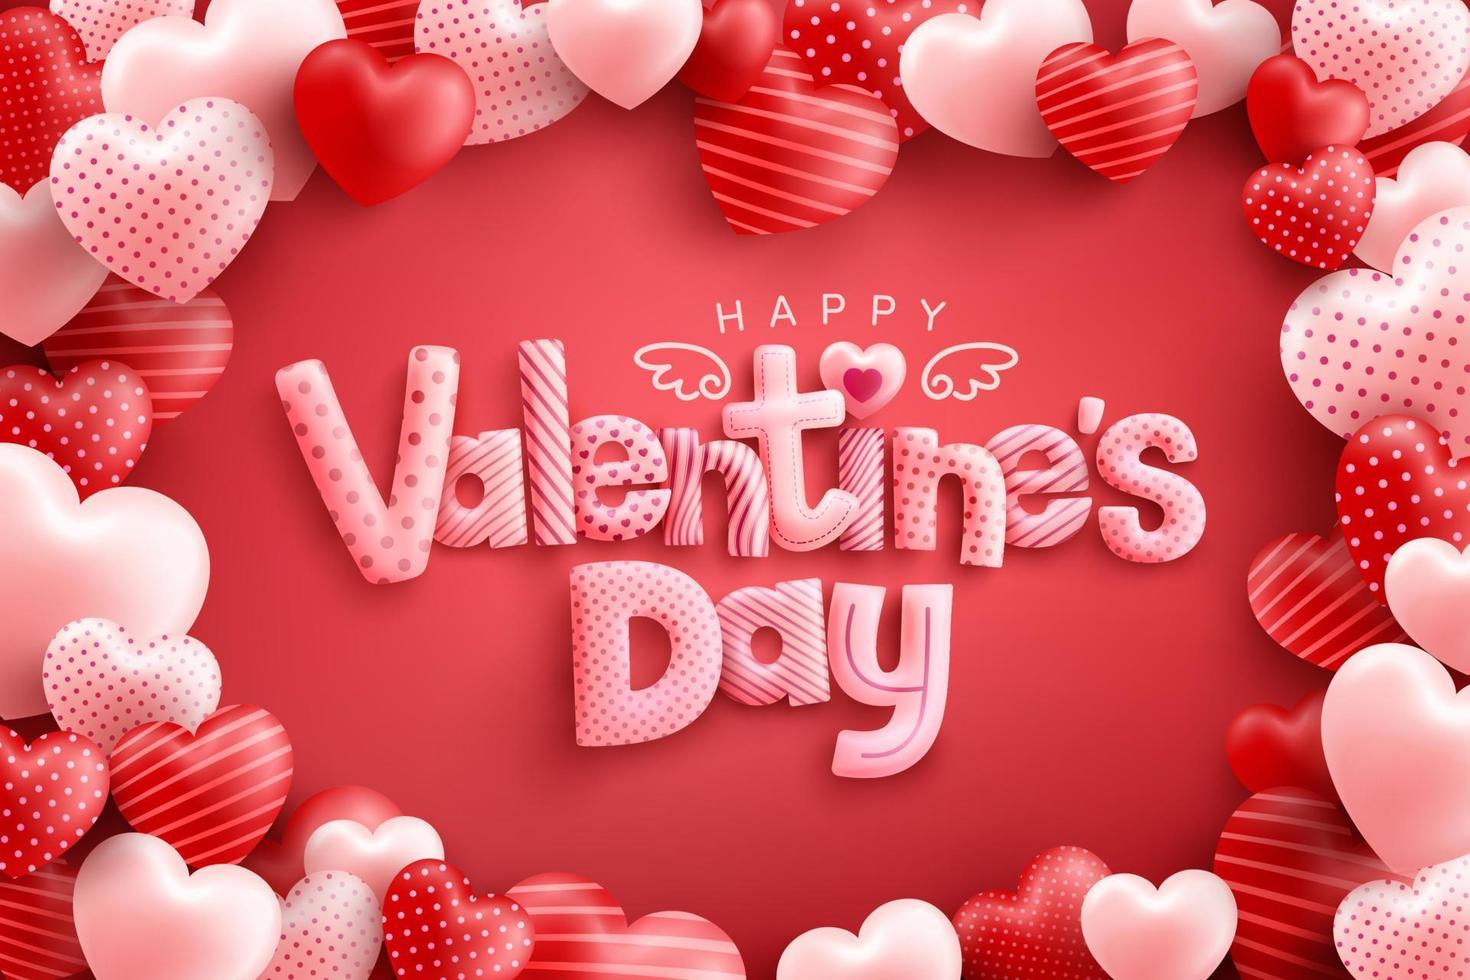 Happy Valentinstag Poster oder Banner mit süßer Schrift und vielen süßen Herzen auf rotem Hintergrund. Promotion- und Shopping-Vorlage oder Hintergrund für Liebes- und Valentinstagskonzept vektor